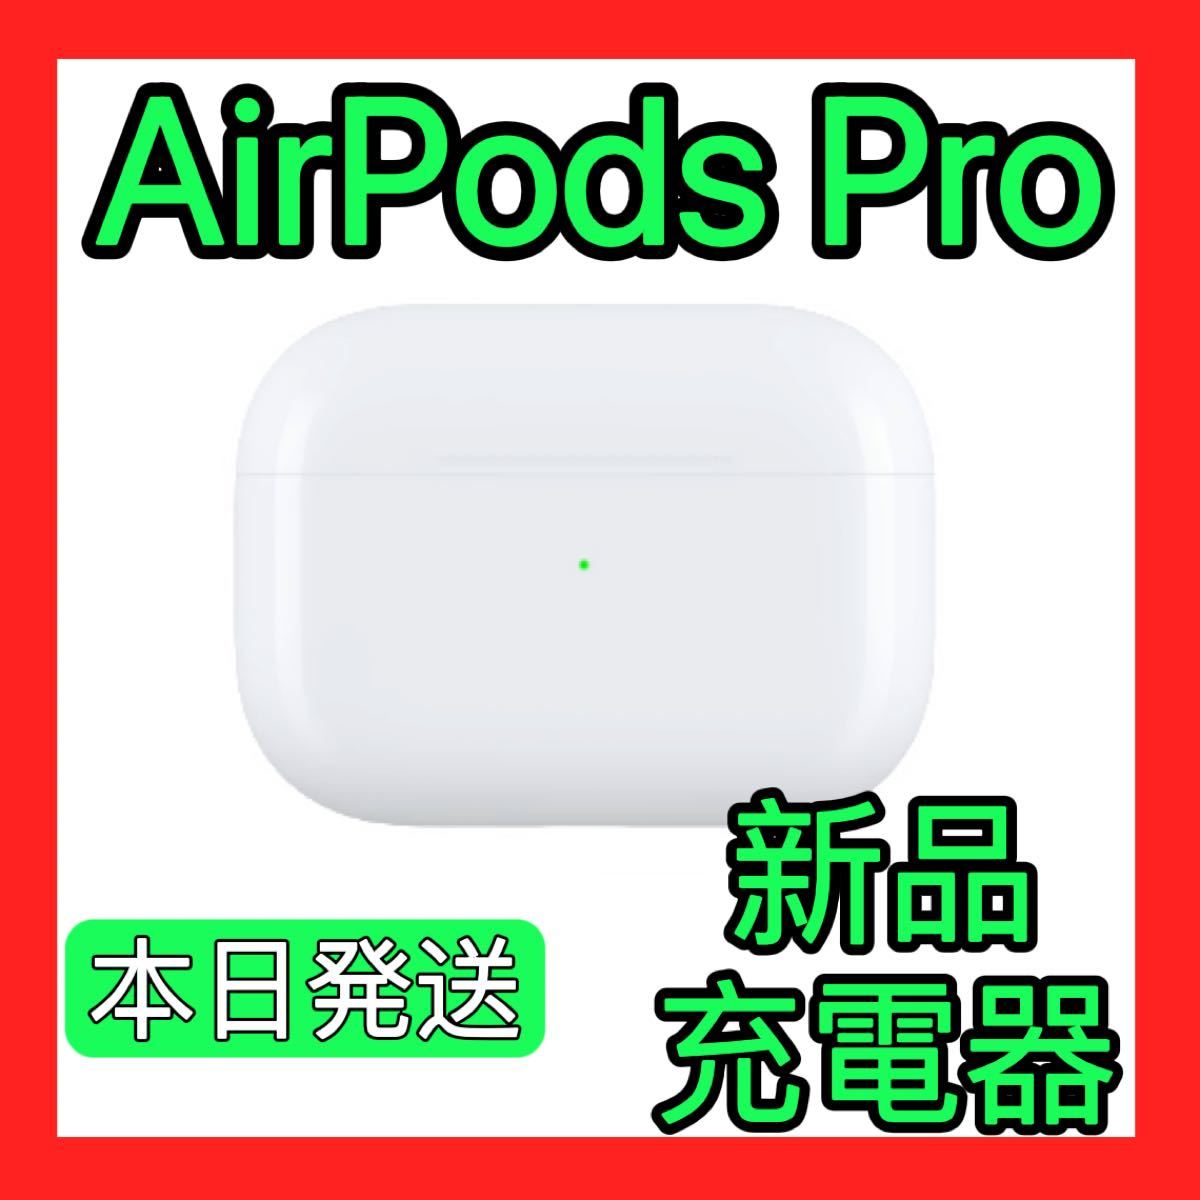 Apple純正品 エアーポッズプロ 第一世代 充電ケースのみ AirPods Pro